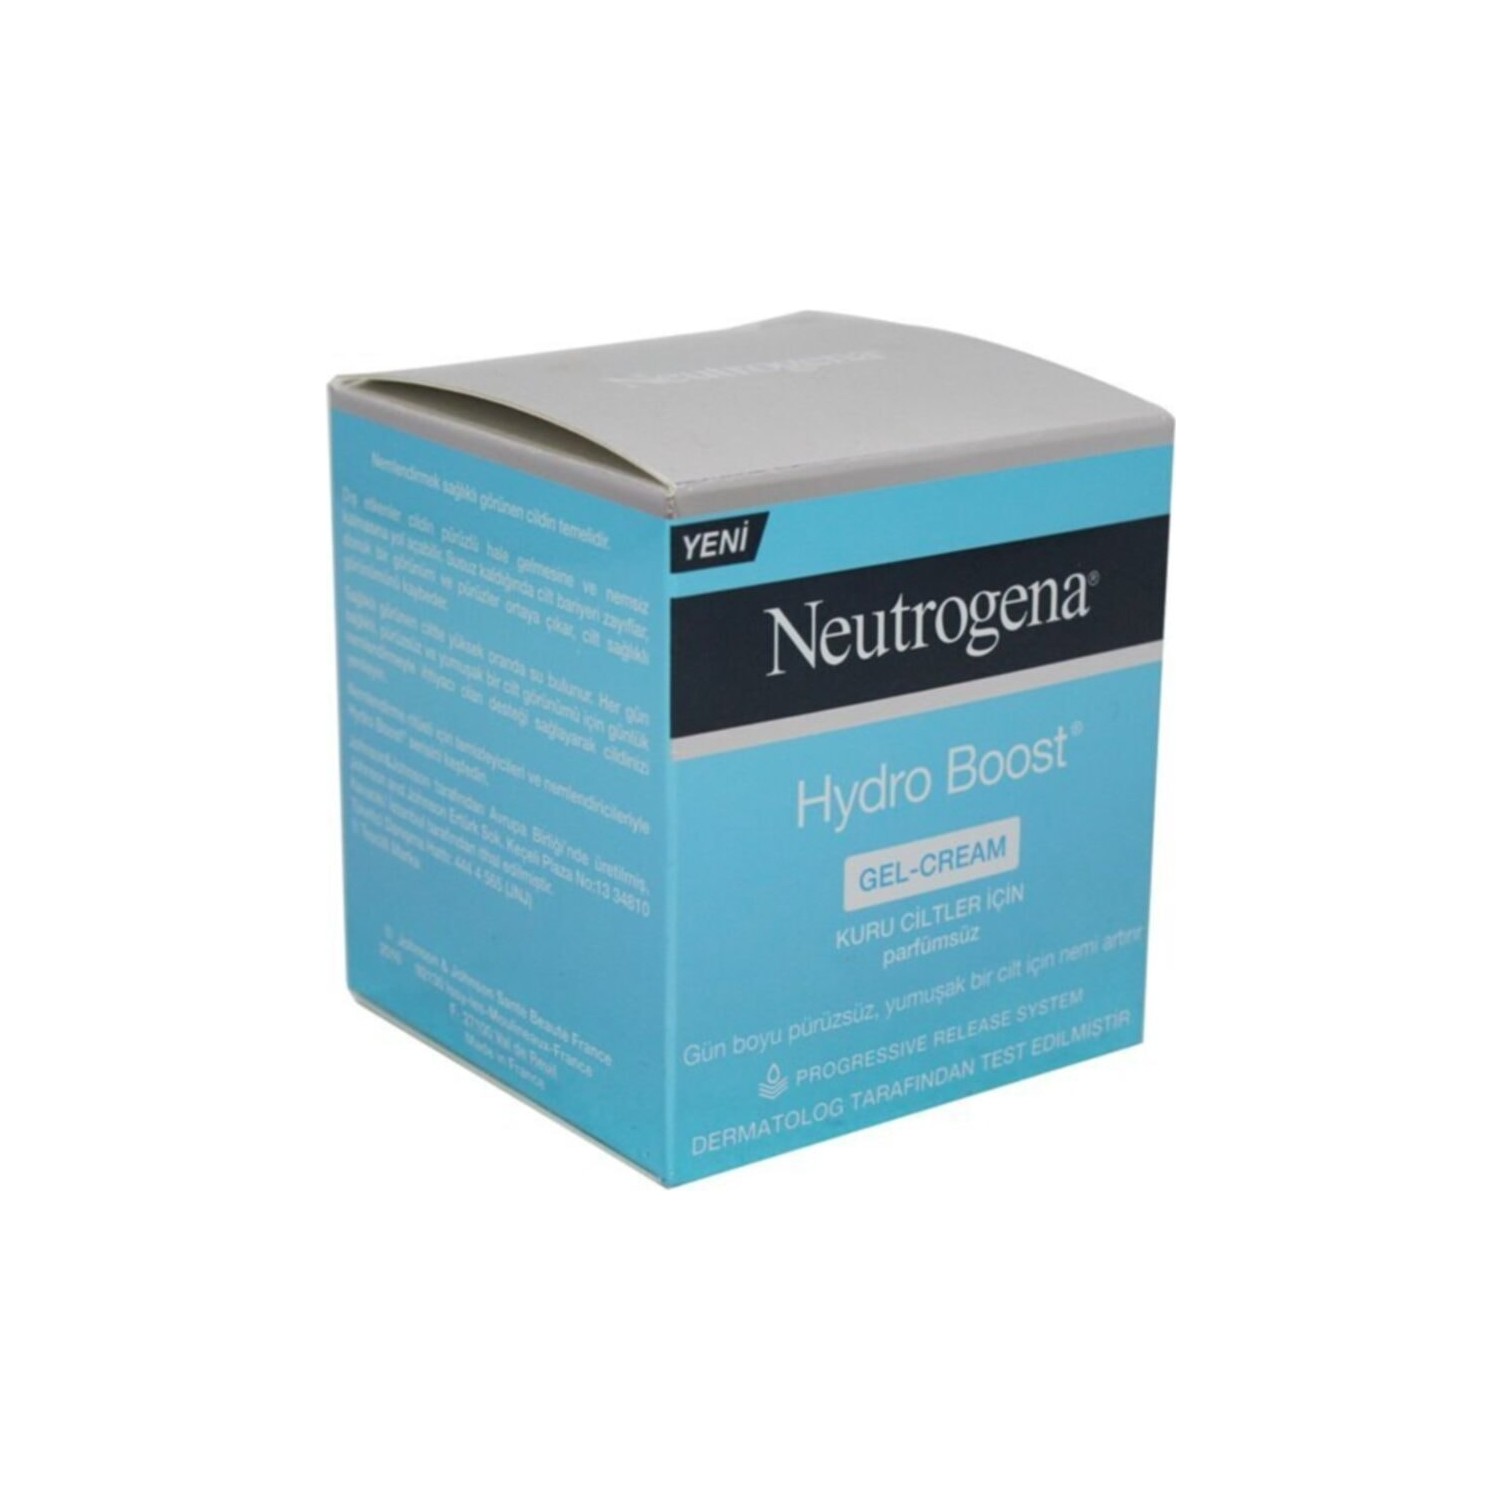 Гель-крем Neutrogena Hydro Boost для сухой кожи, 50 мл крем увлажняющий neutrogena hydro boost water gel для нормальной кожи 2 упаковки по 50 мл